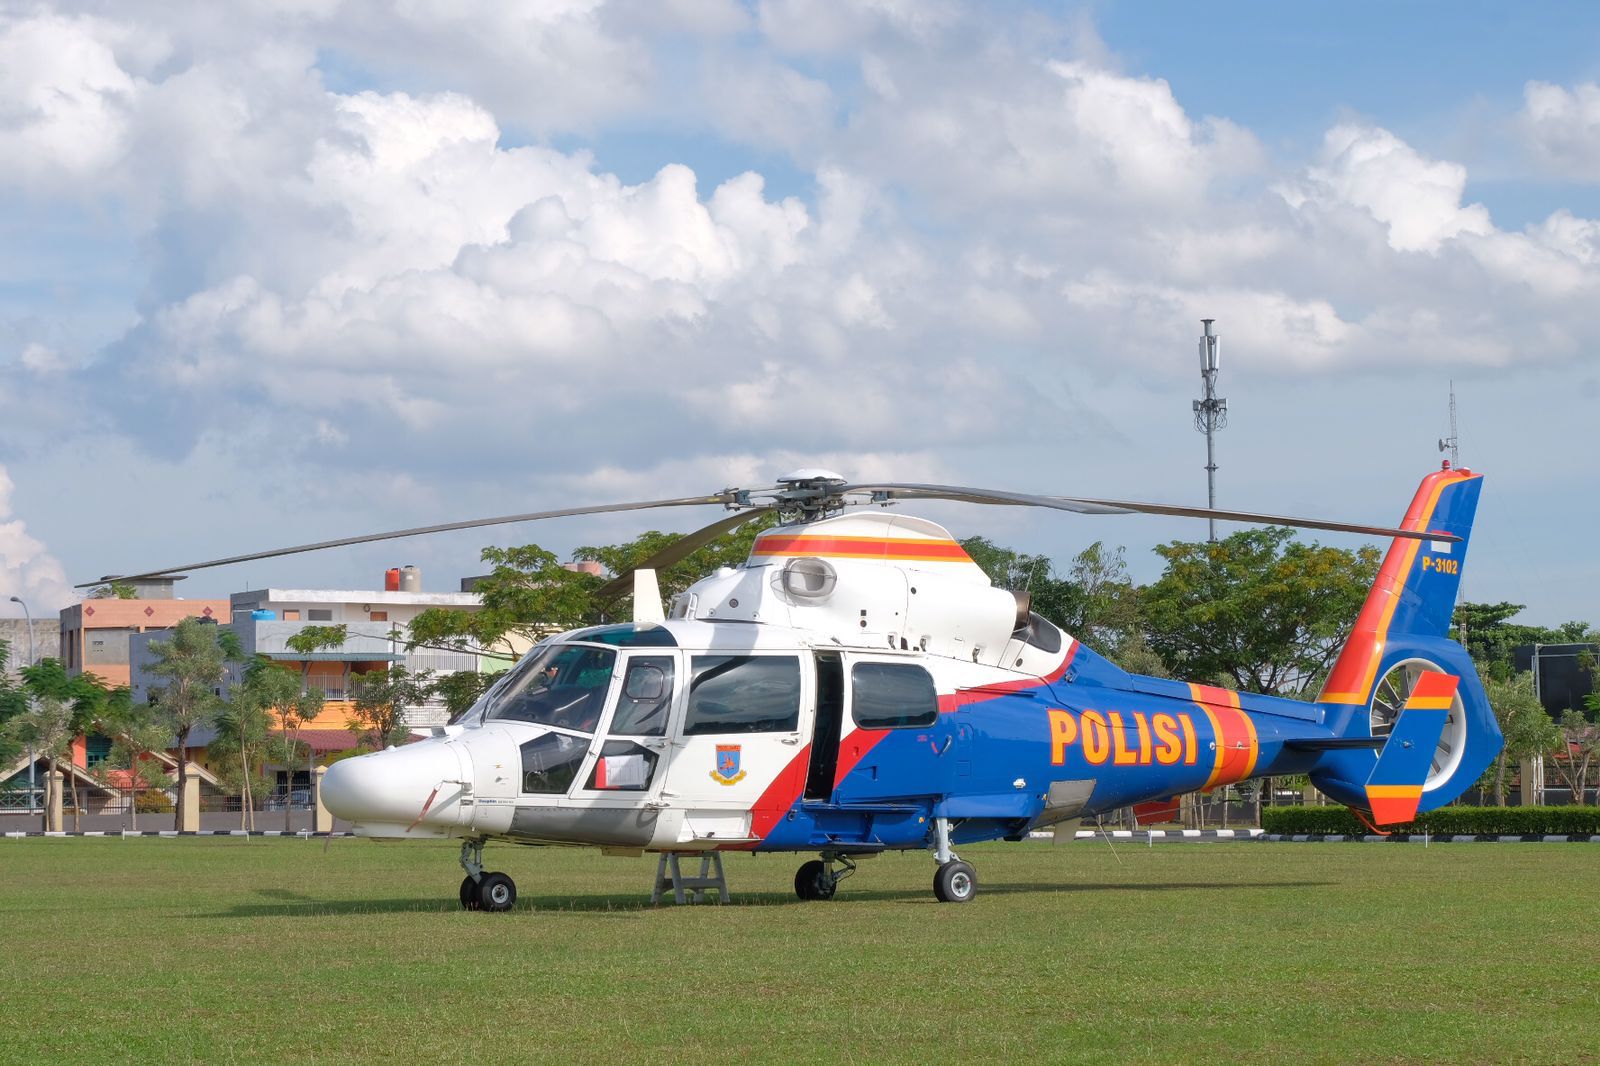 Mabes Polri Kirim Helikopter Untuk Polda Riau Perkuat Patroli Udara Atasi Illegal Logging